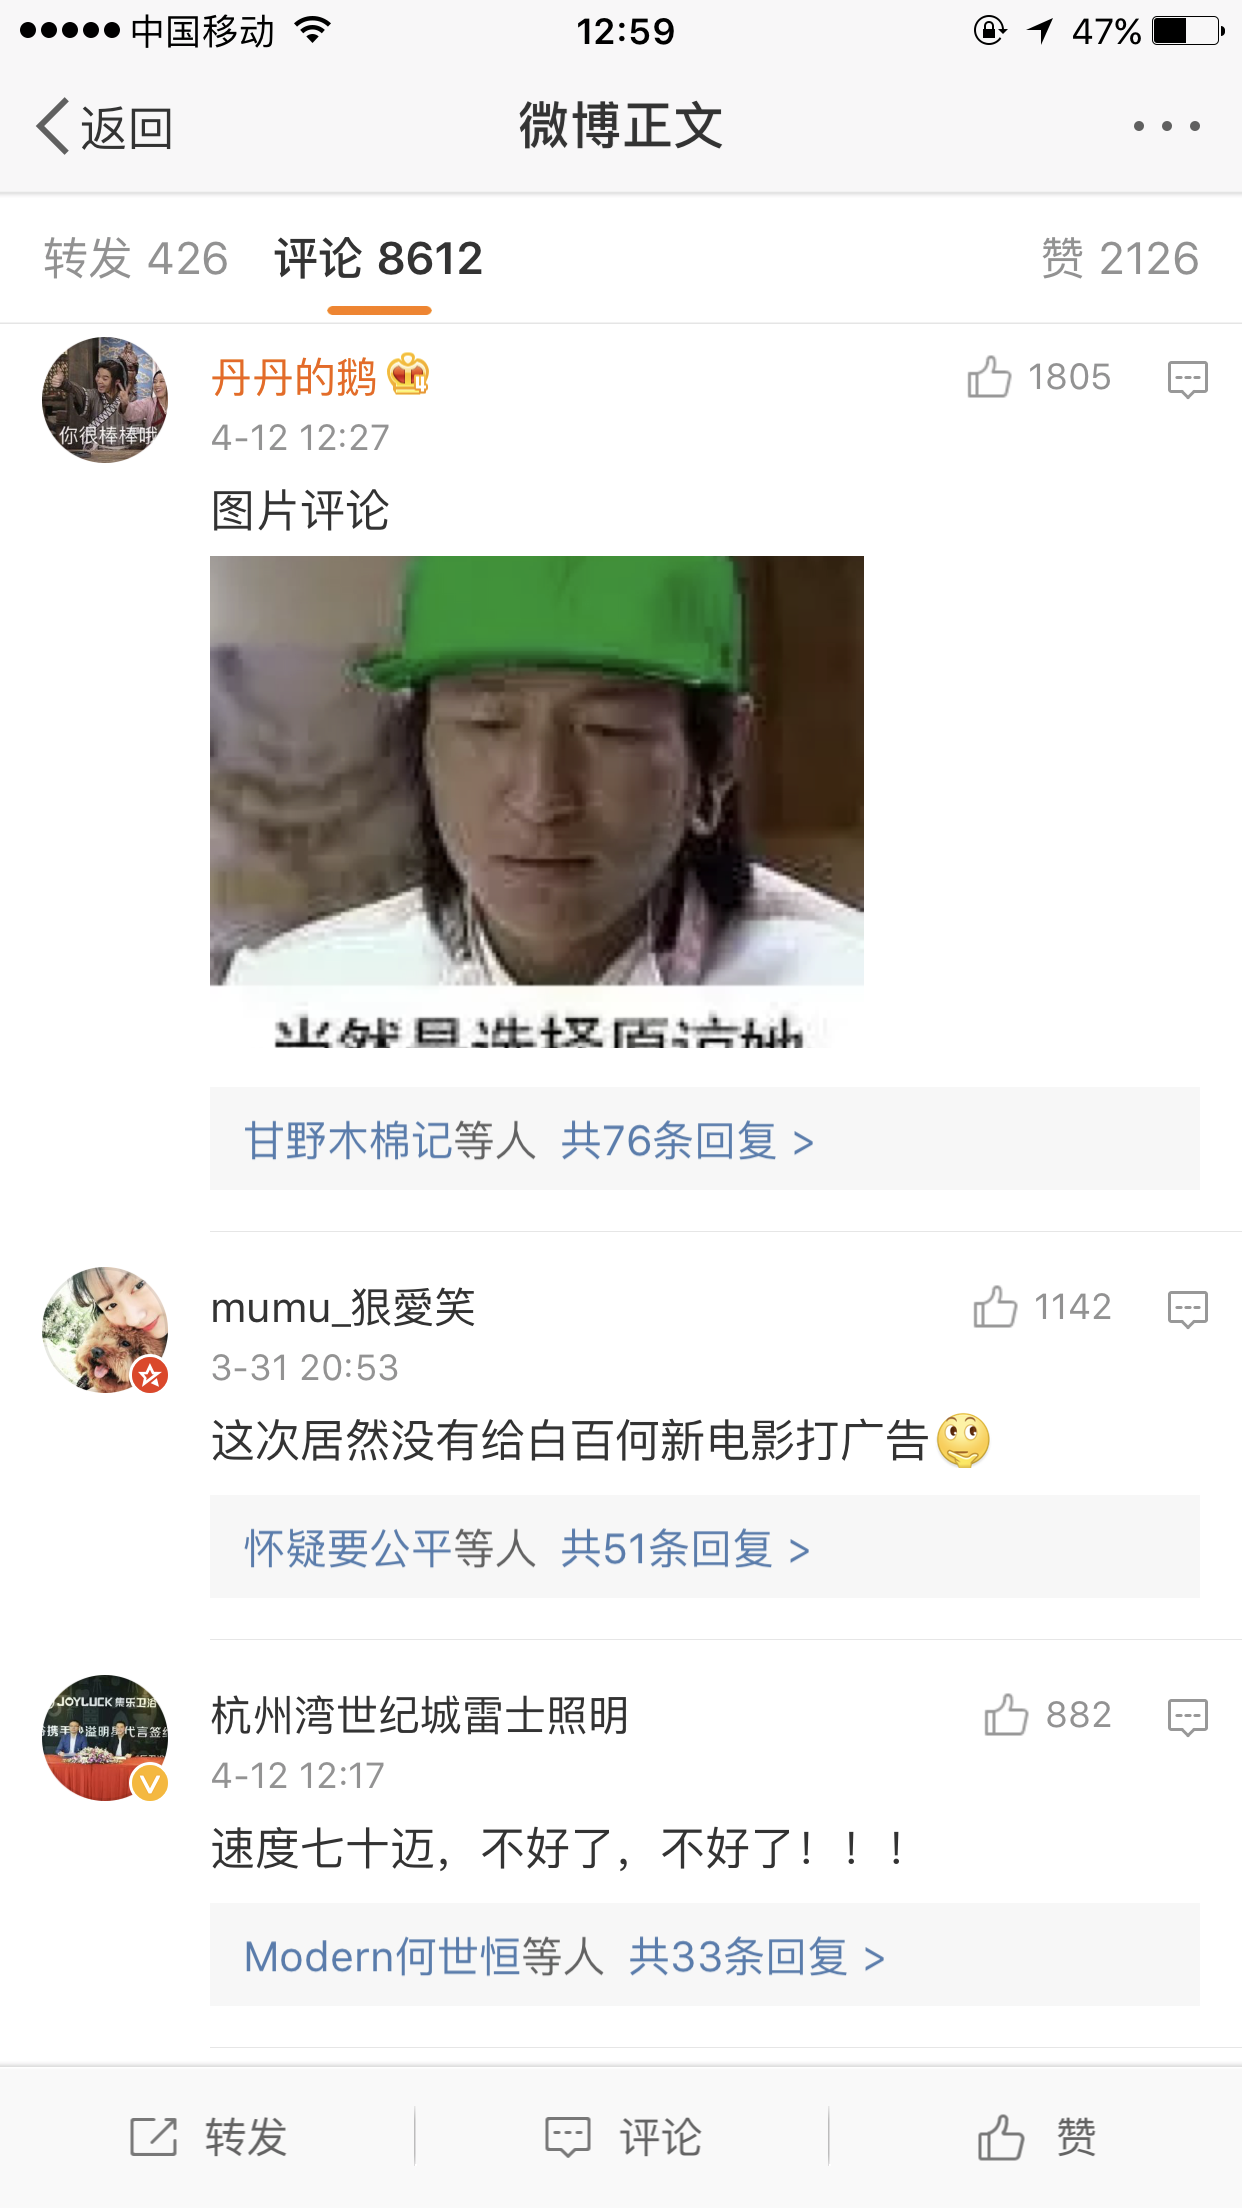 陈羽凡微博的评论画风都是绿色的…… ​​​​